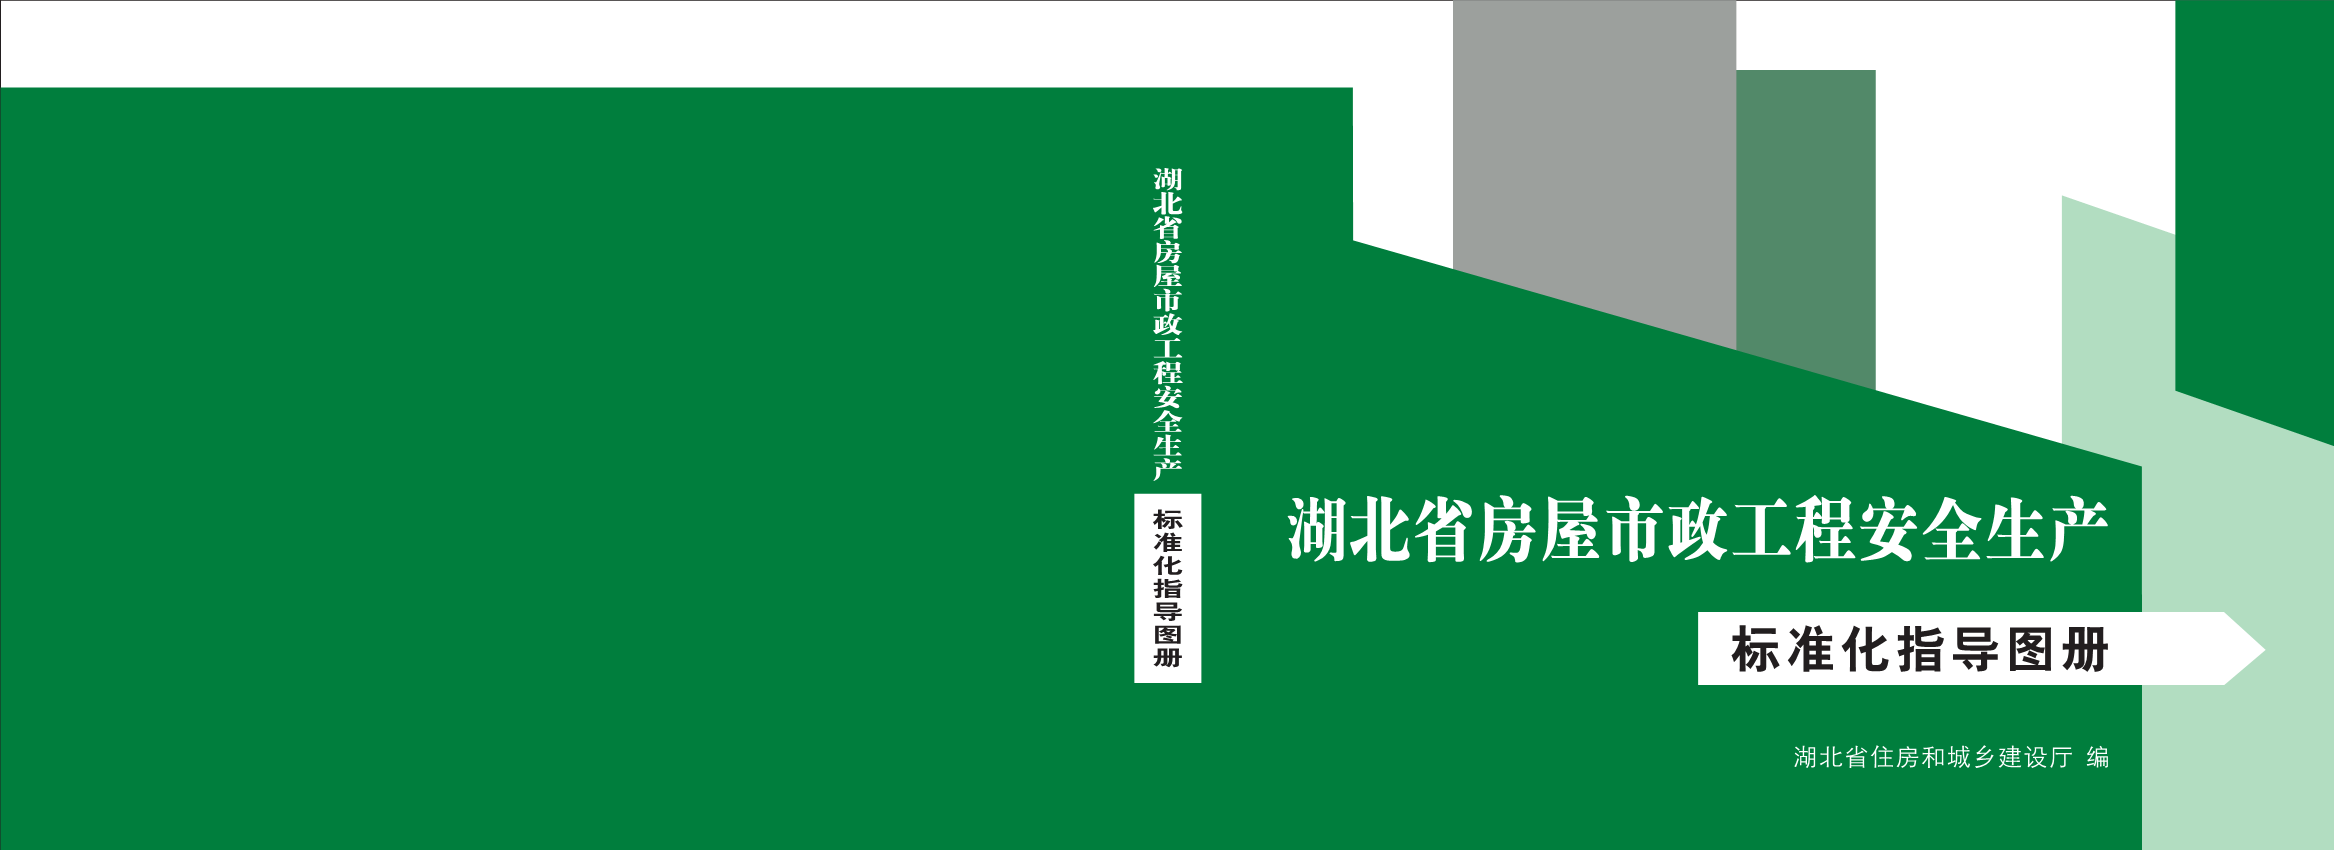 湖北省房屋市政工程安全生产标准化指导图册